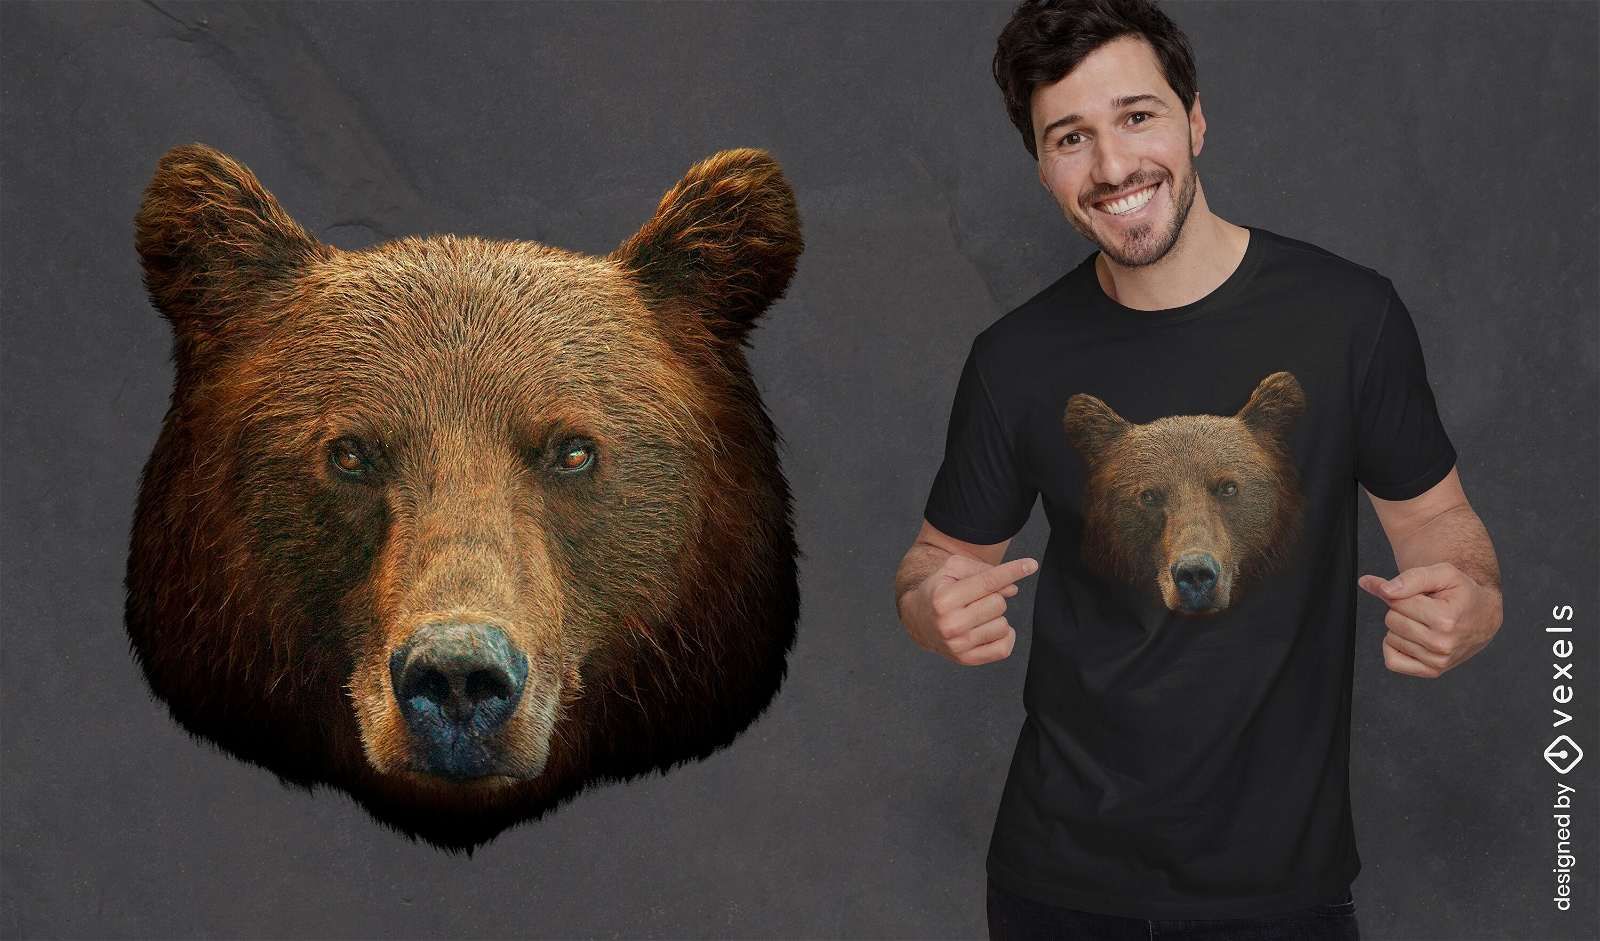 Dise?o realista de camiseta con cabeza de oso grizzly